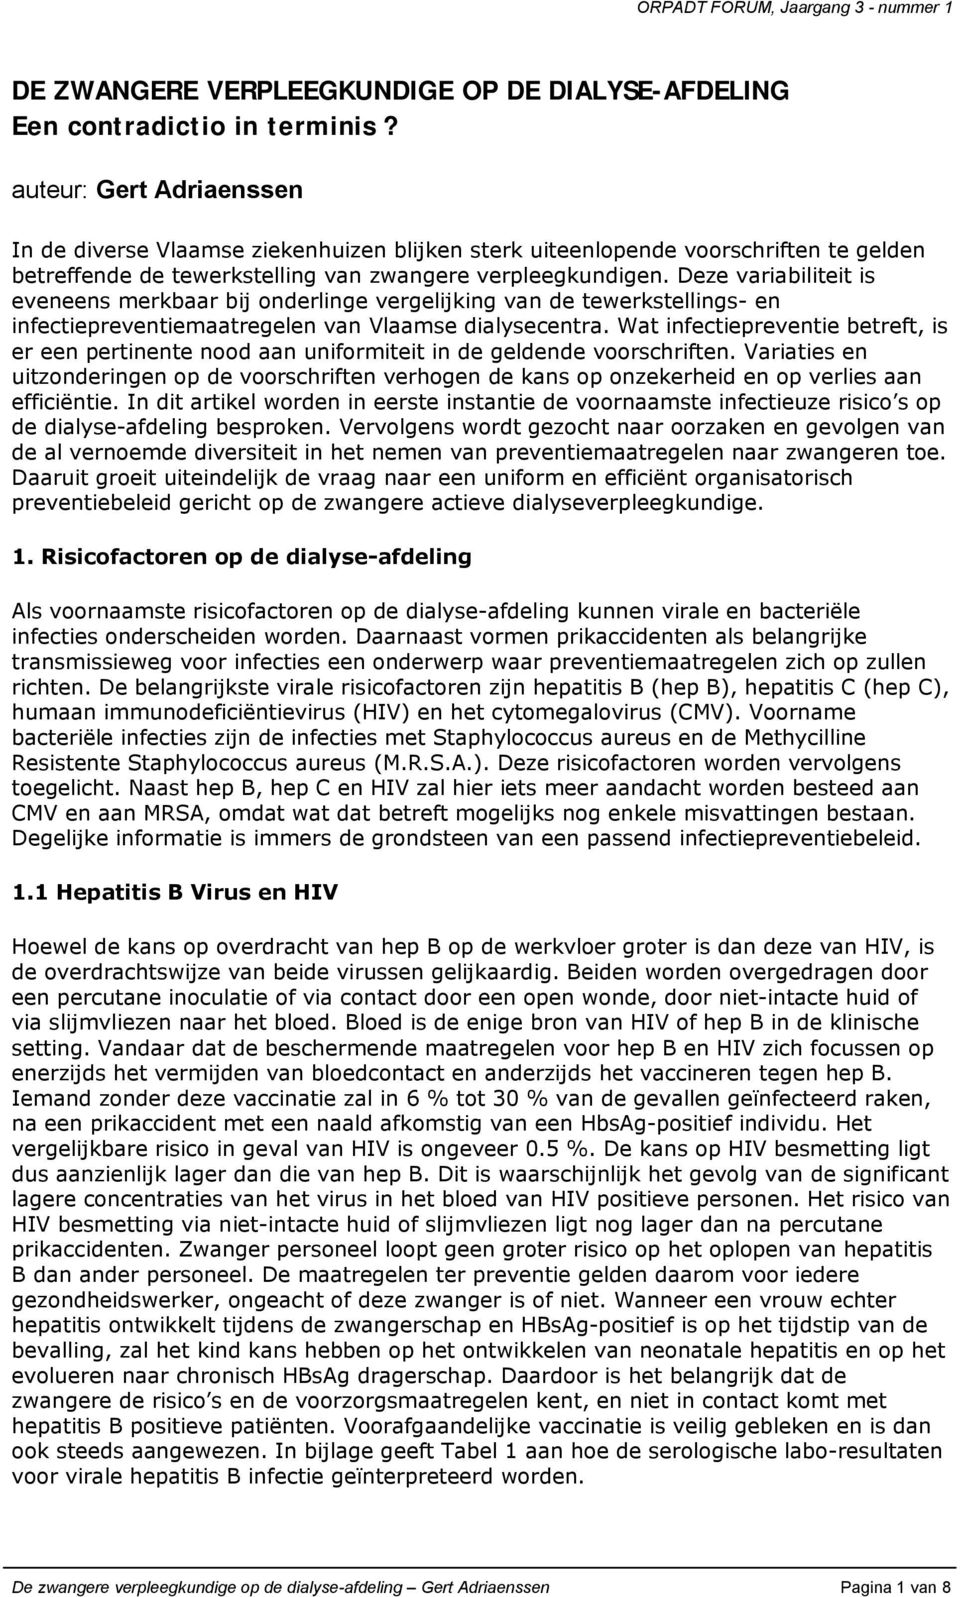 Deze variabiliteit is eveneens merkbaar bij onderlinge vergelijking van de tewerkstellings- en infectiepreventiemaatregelen van Vlaamse dialysecentra.